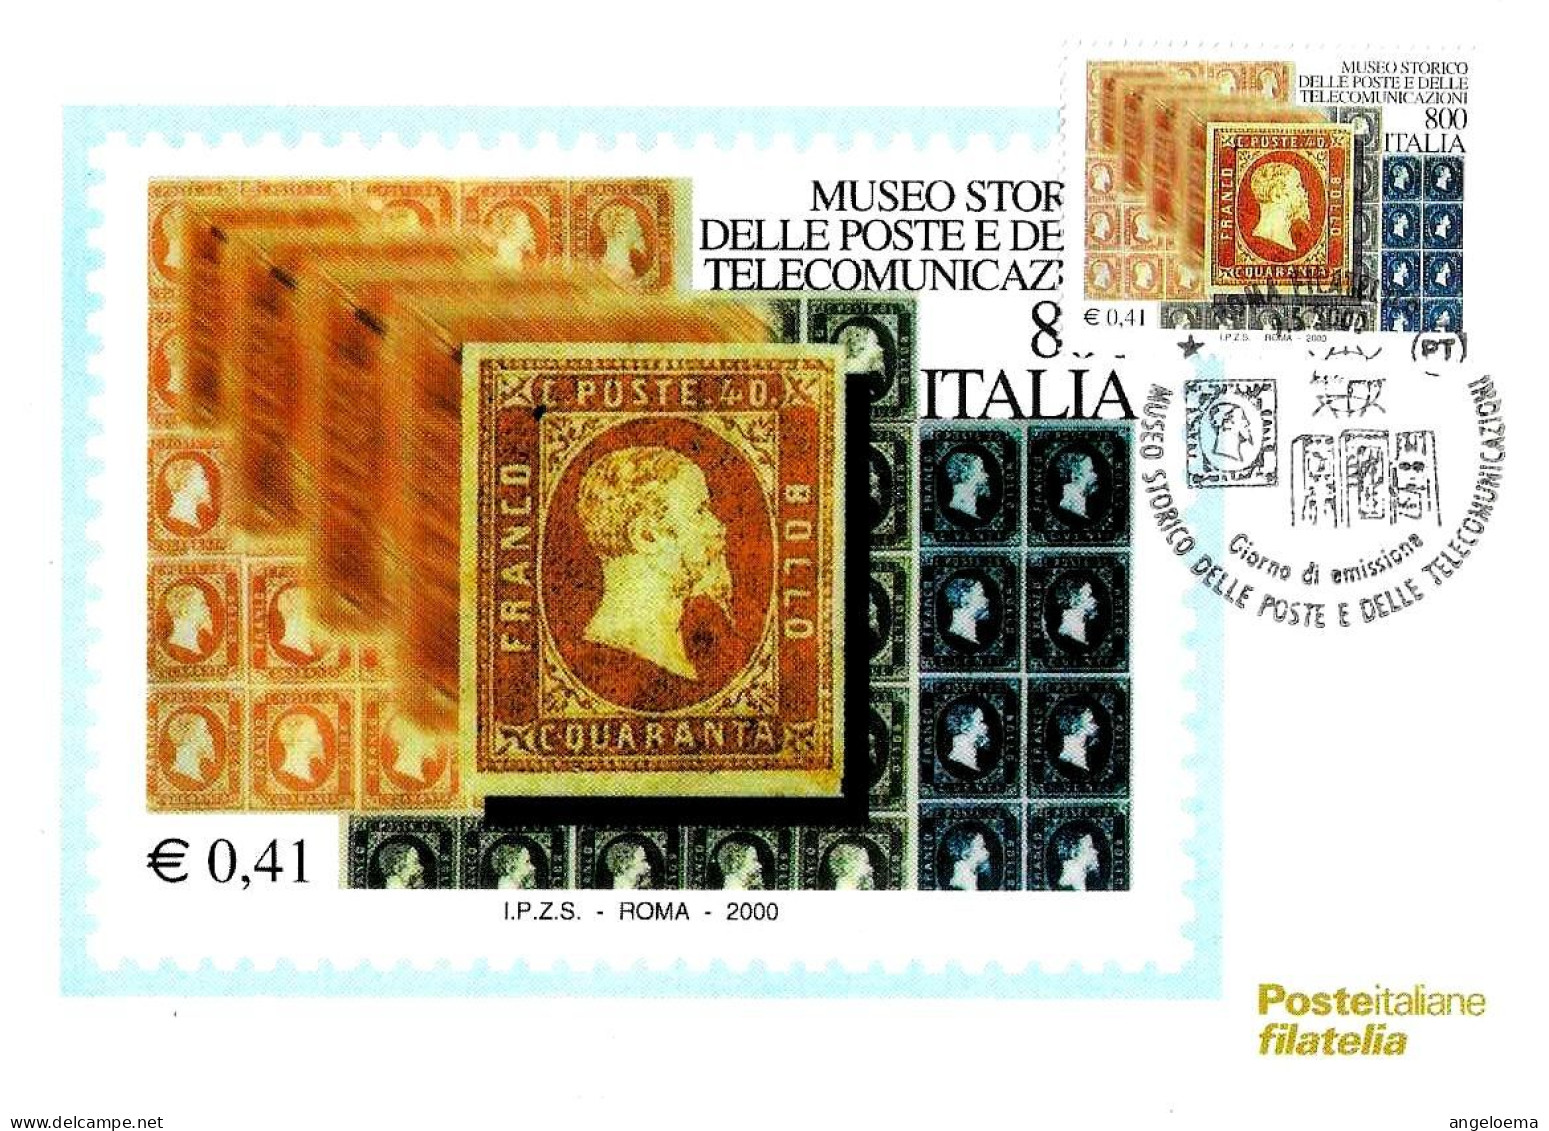 ITALIA ITALY - 2000 ROMA Museo Poste E Telecomunicazioni Francobolli Regno Di Sardegna Annullo Fdc Su Cartolina PT - 770 - Expositions Philatéliques